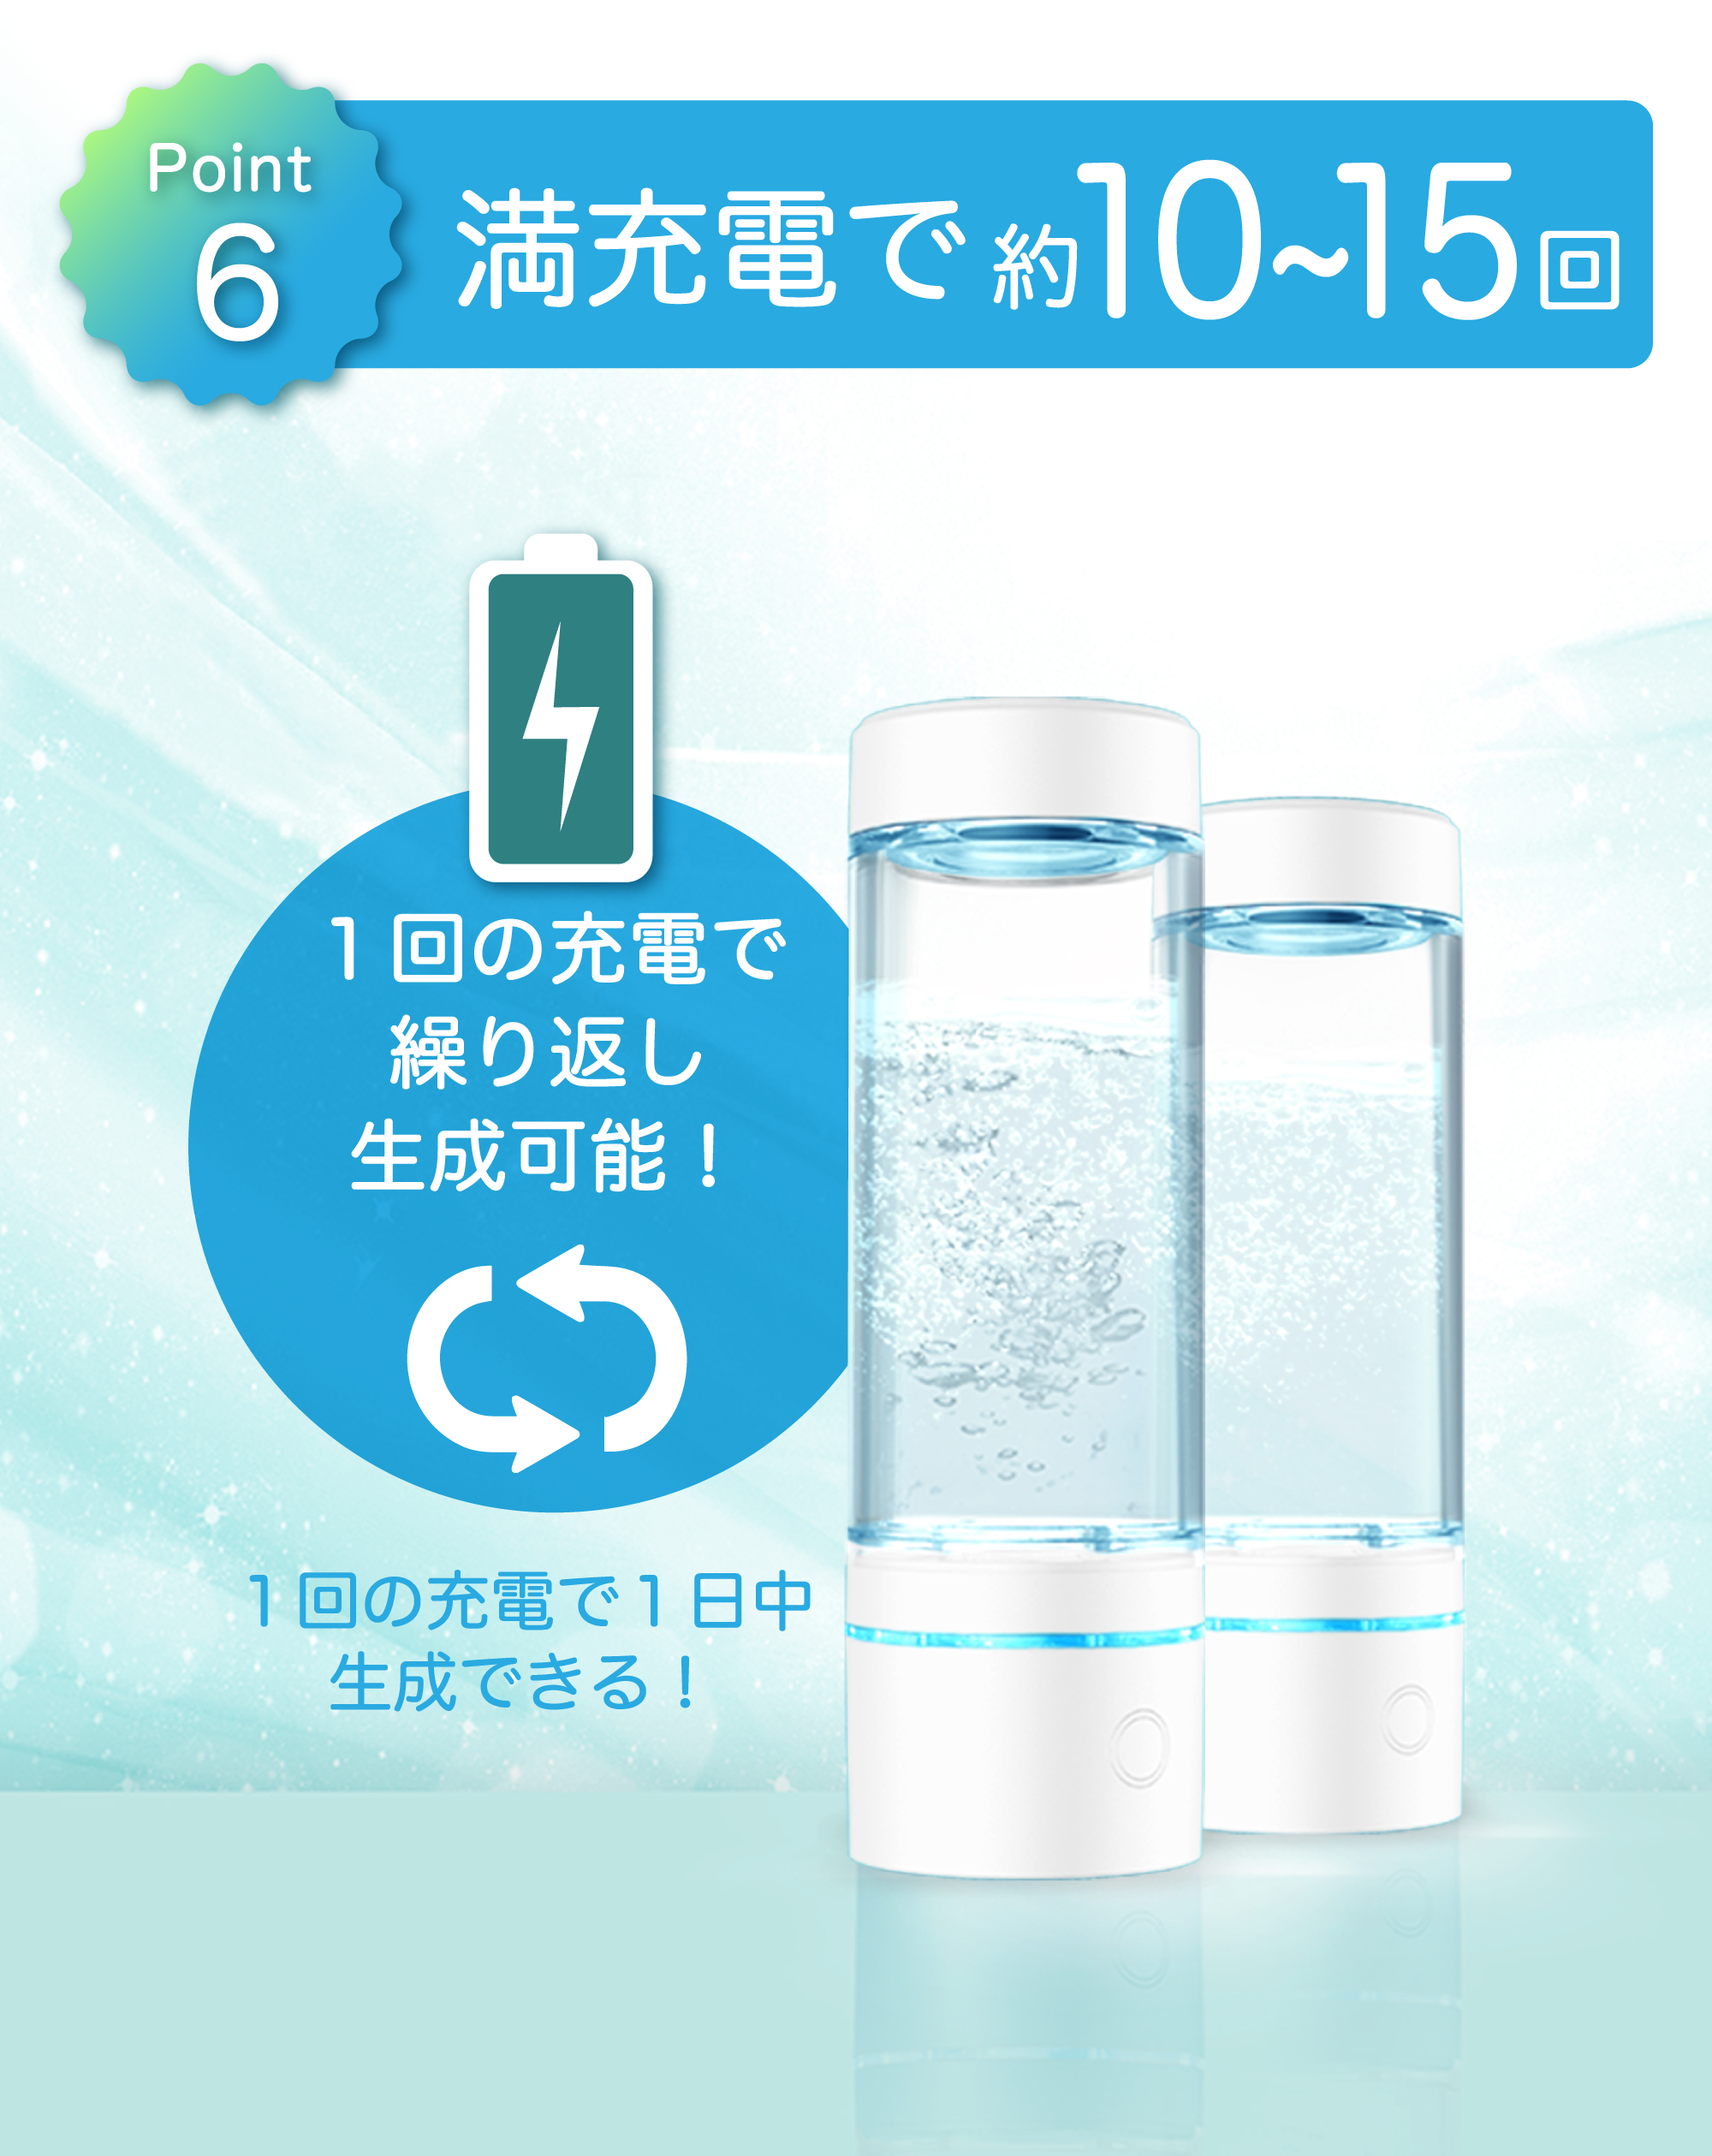 水素水生成器 水素水 生成器 高濃度 高濃度 ポータブル水素水生成器 SY 